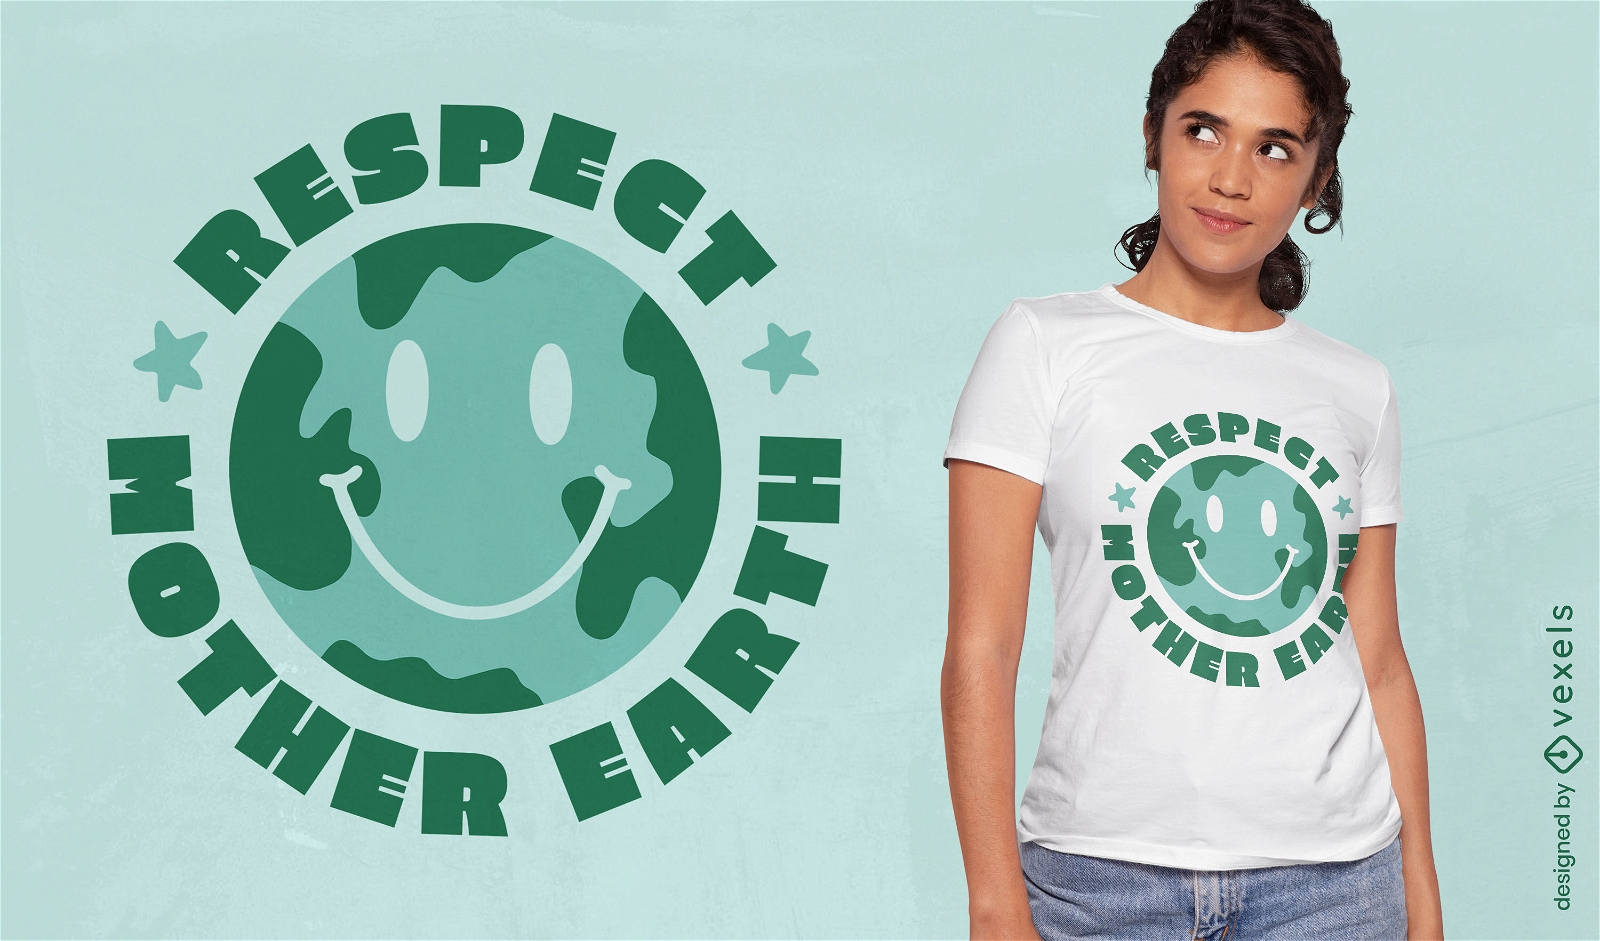 Respeite o design da camiseta com letras da M?e Terra